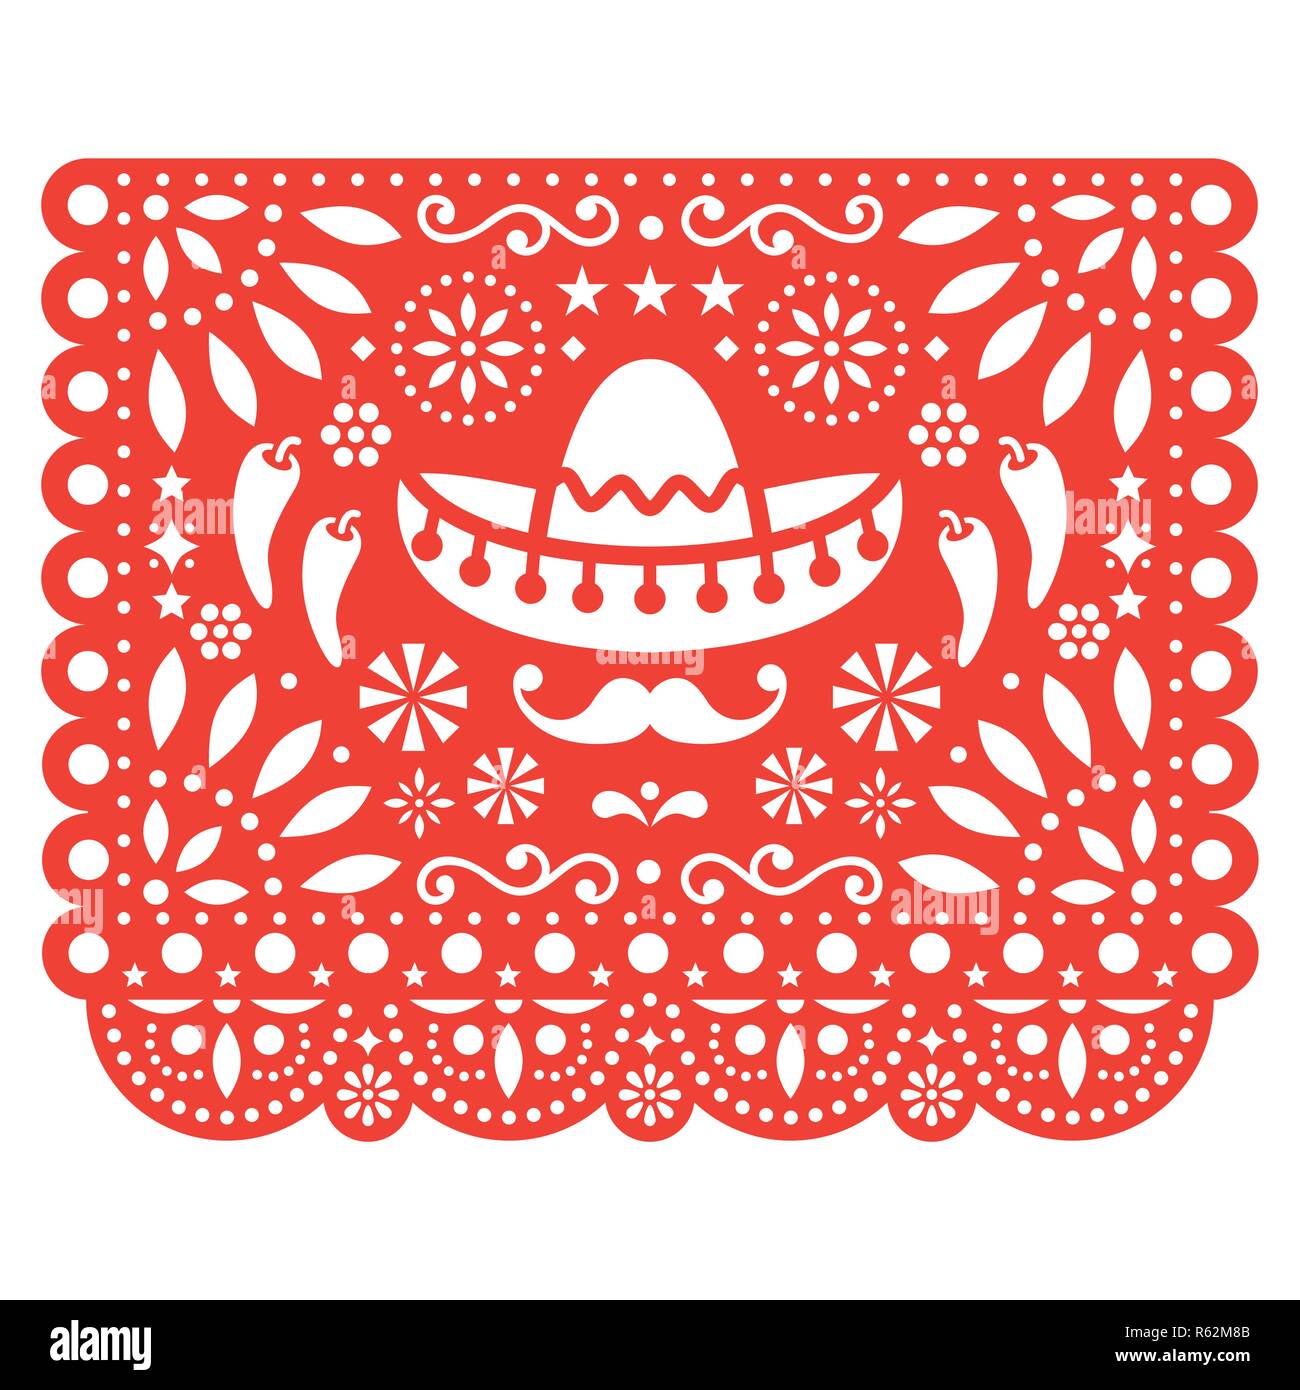 Art populaire, sous forme d'ornement rétro Mexique, cut out composition de fleurs et de formes abstraites isolated on white Illustration de Vecteur